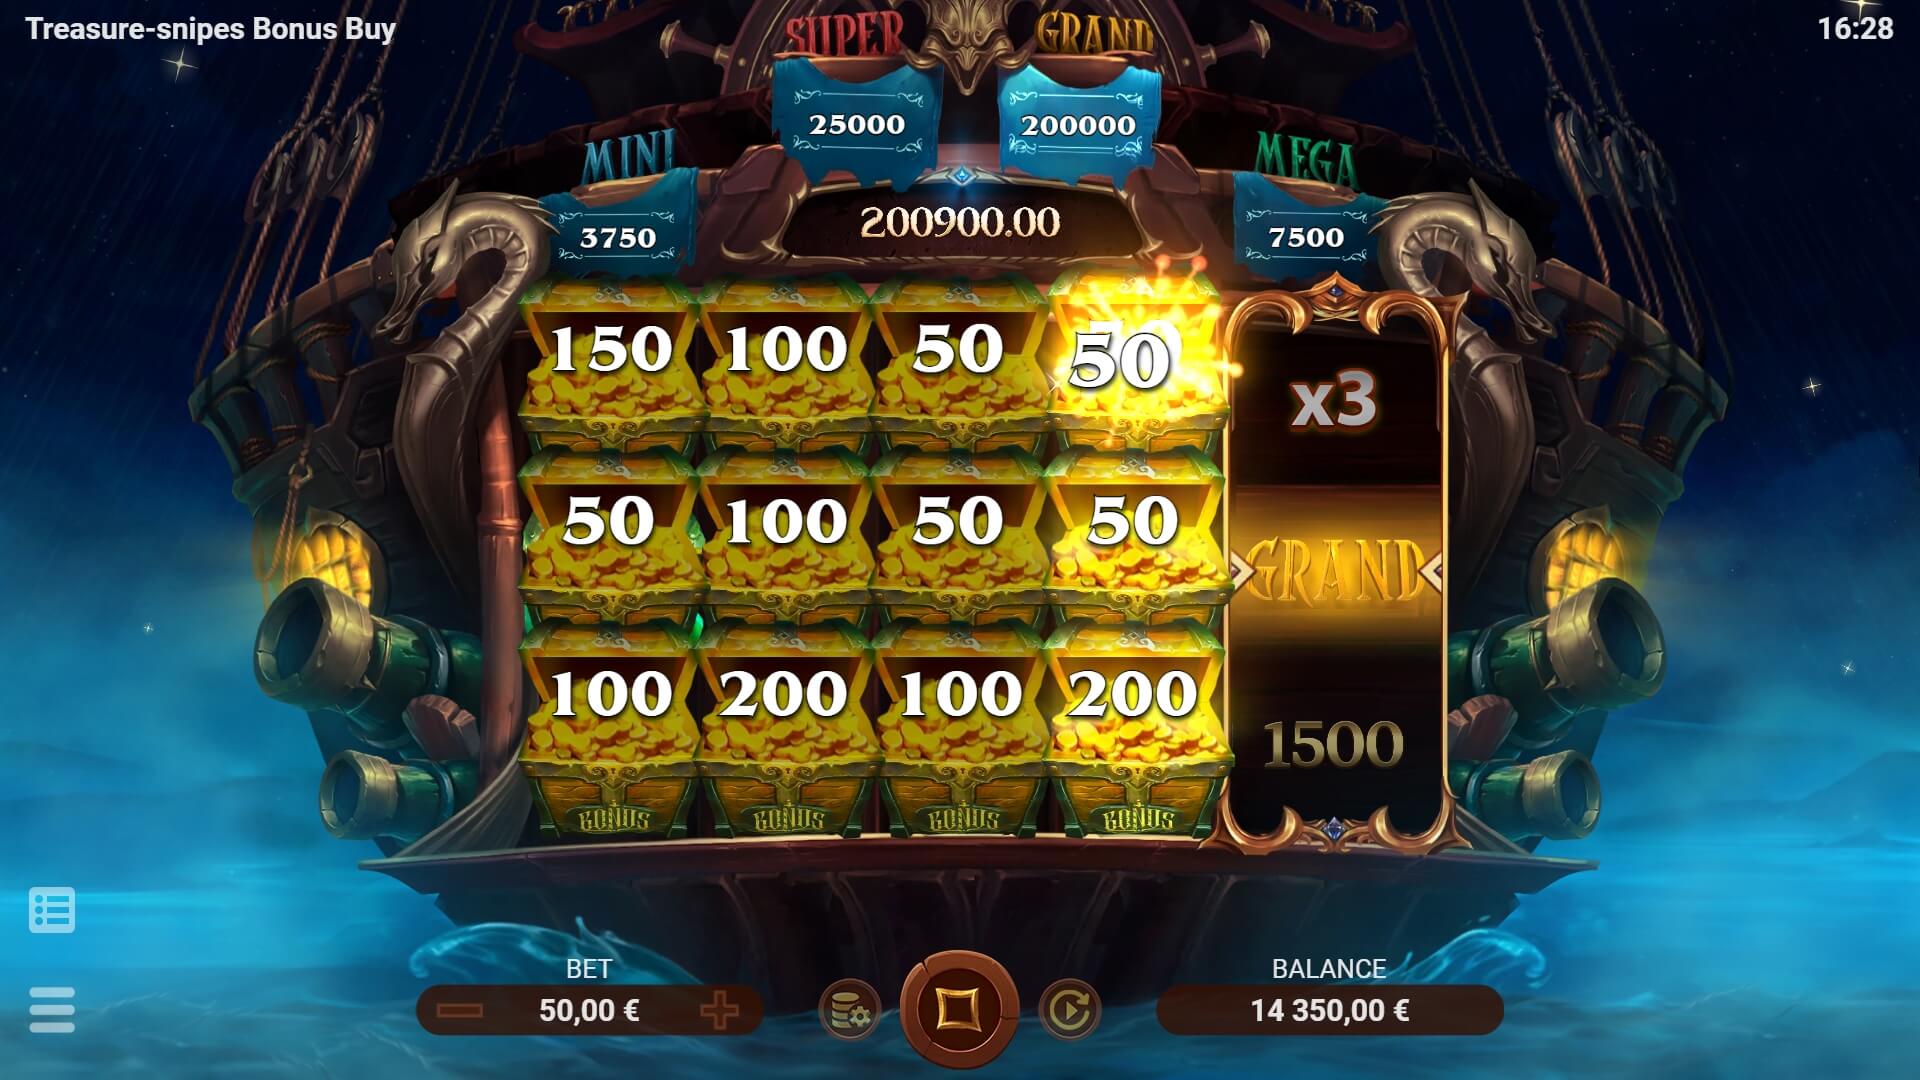 Treasure-snipes Bonus Buy Evoplay 168slotxo